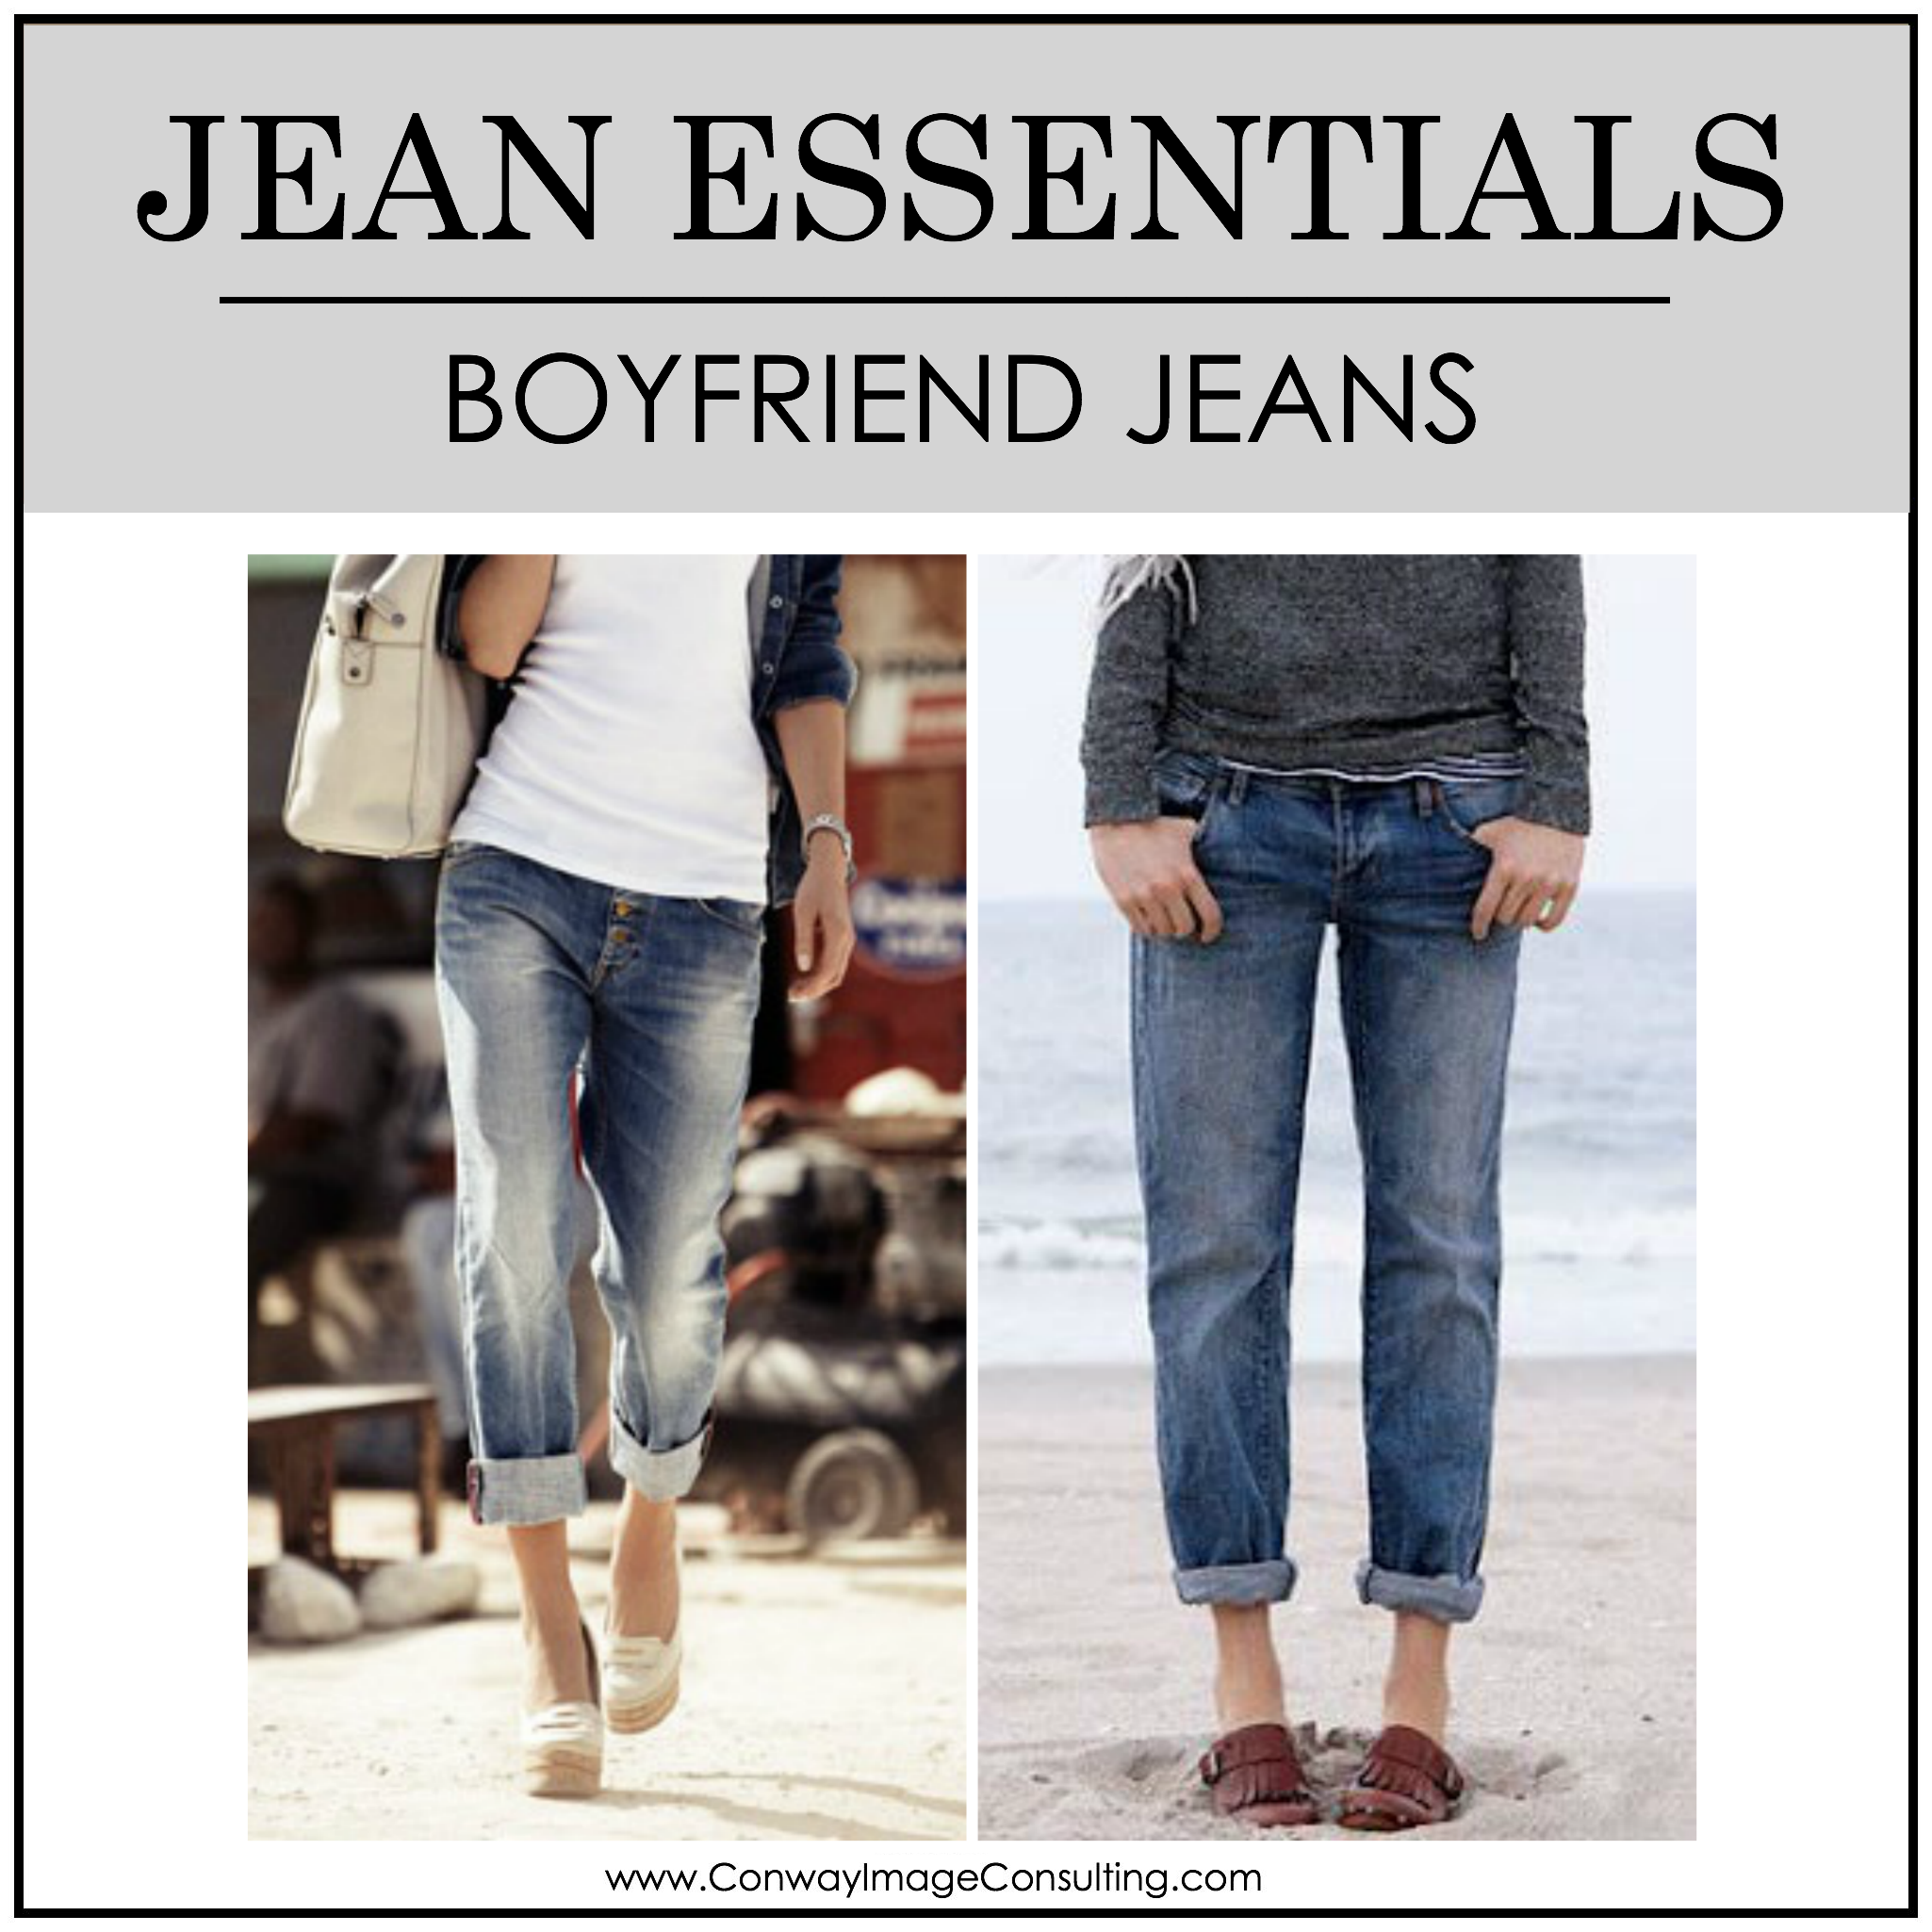 Jean Essentials - The Boyfriend Jean